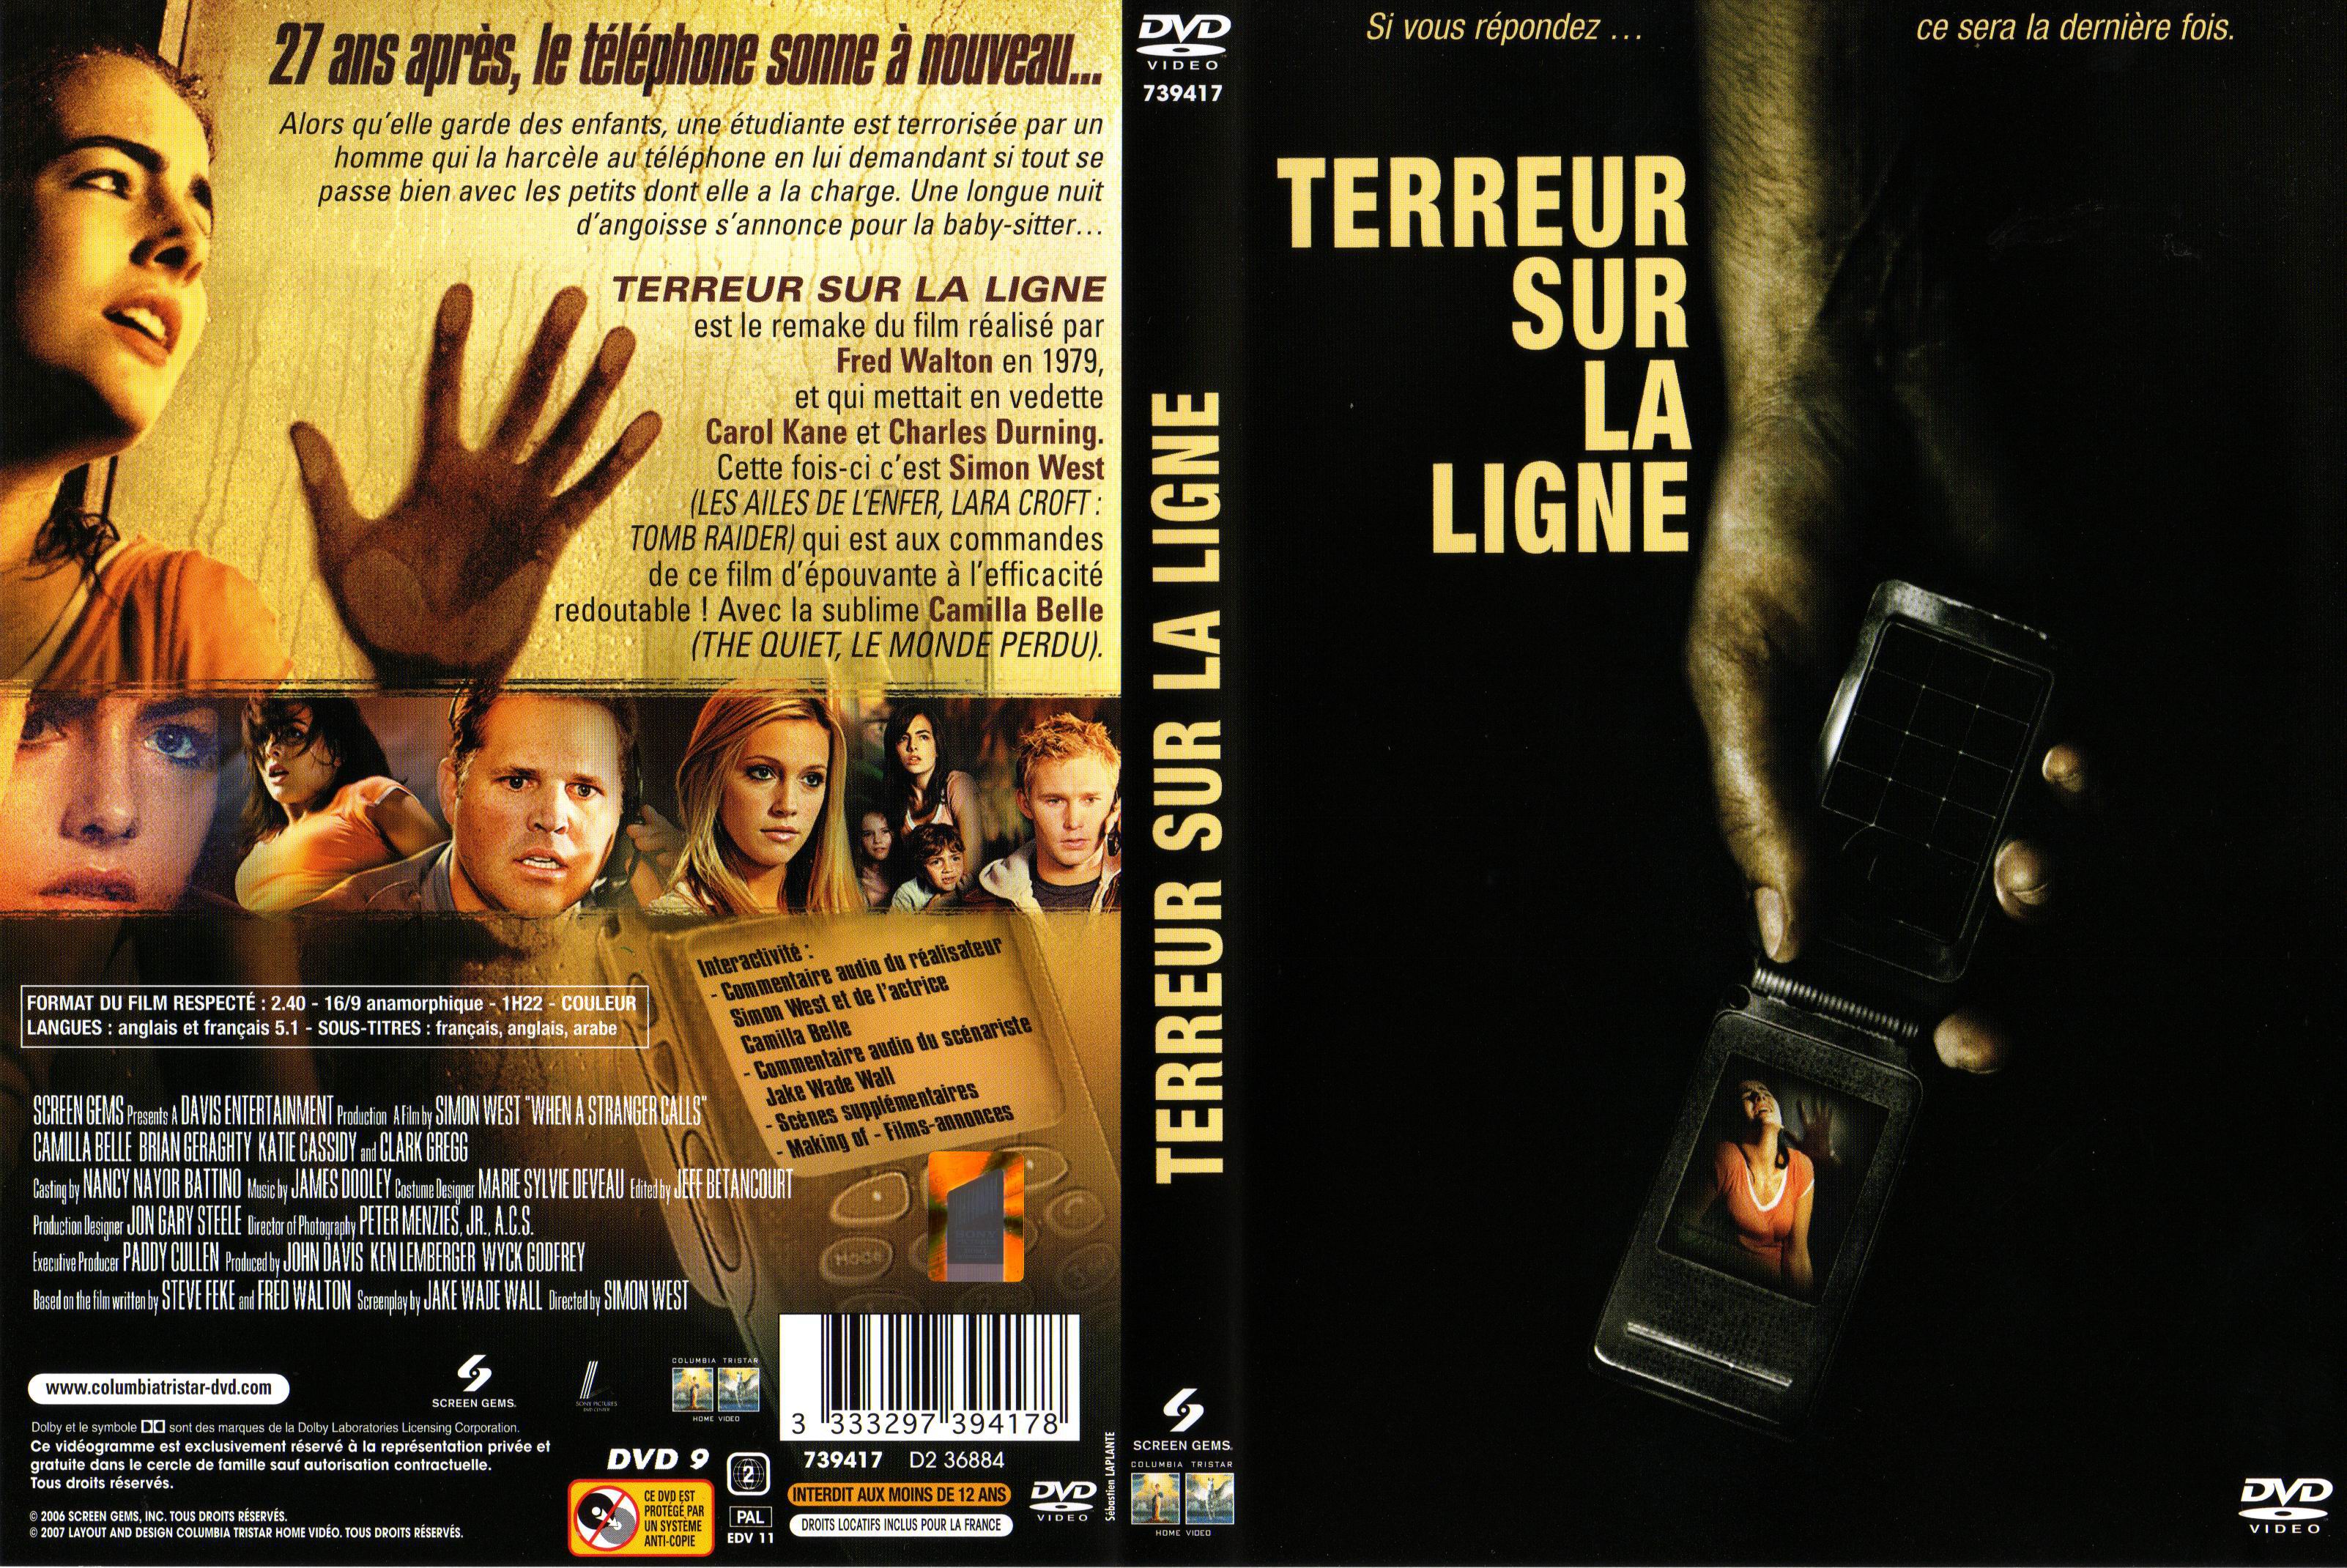 Jaquette DVD Terreur sur la ligne (2006)